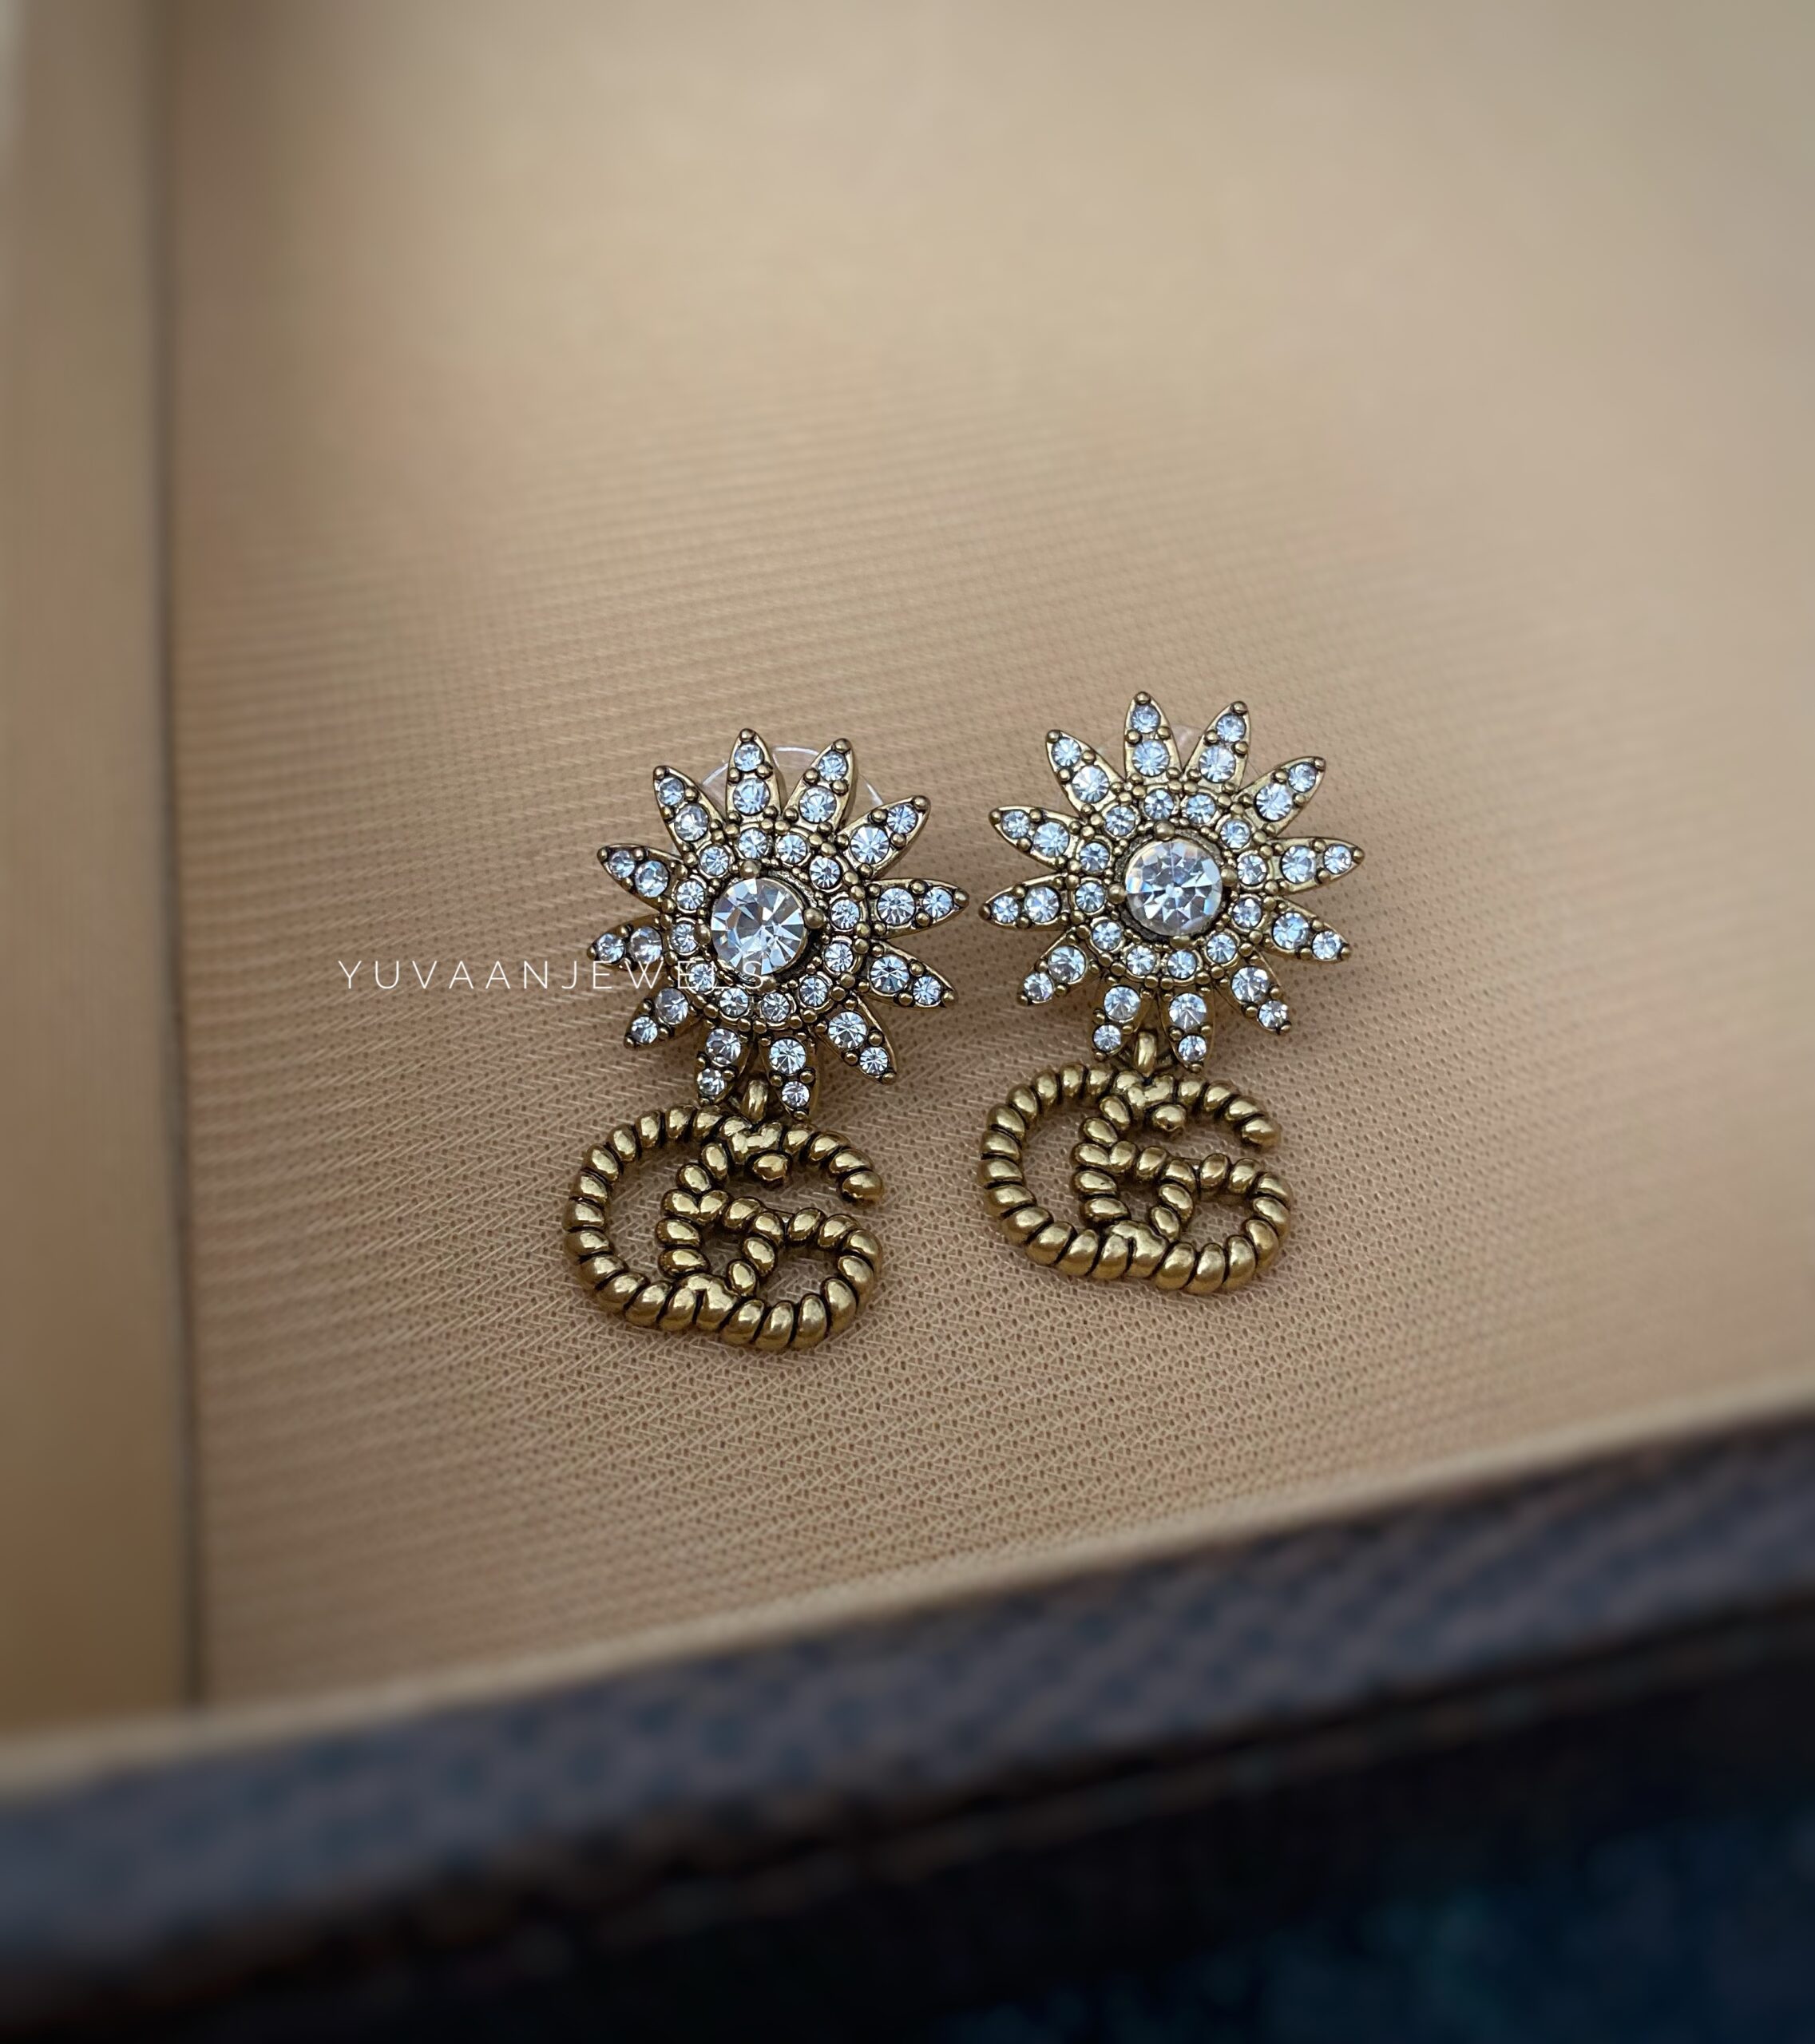 Flora Tan earrings